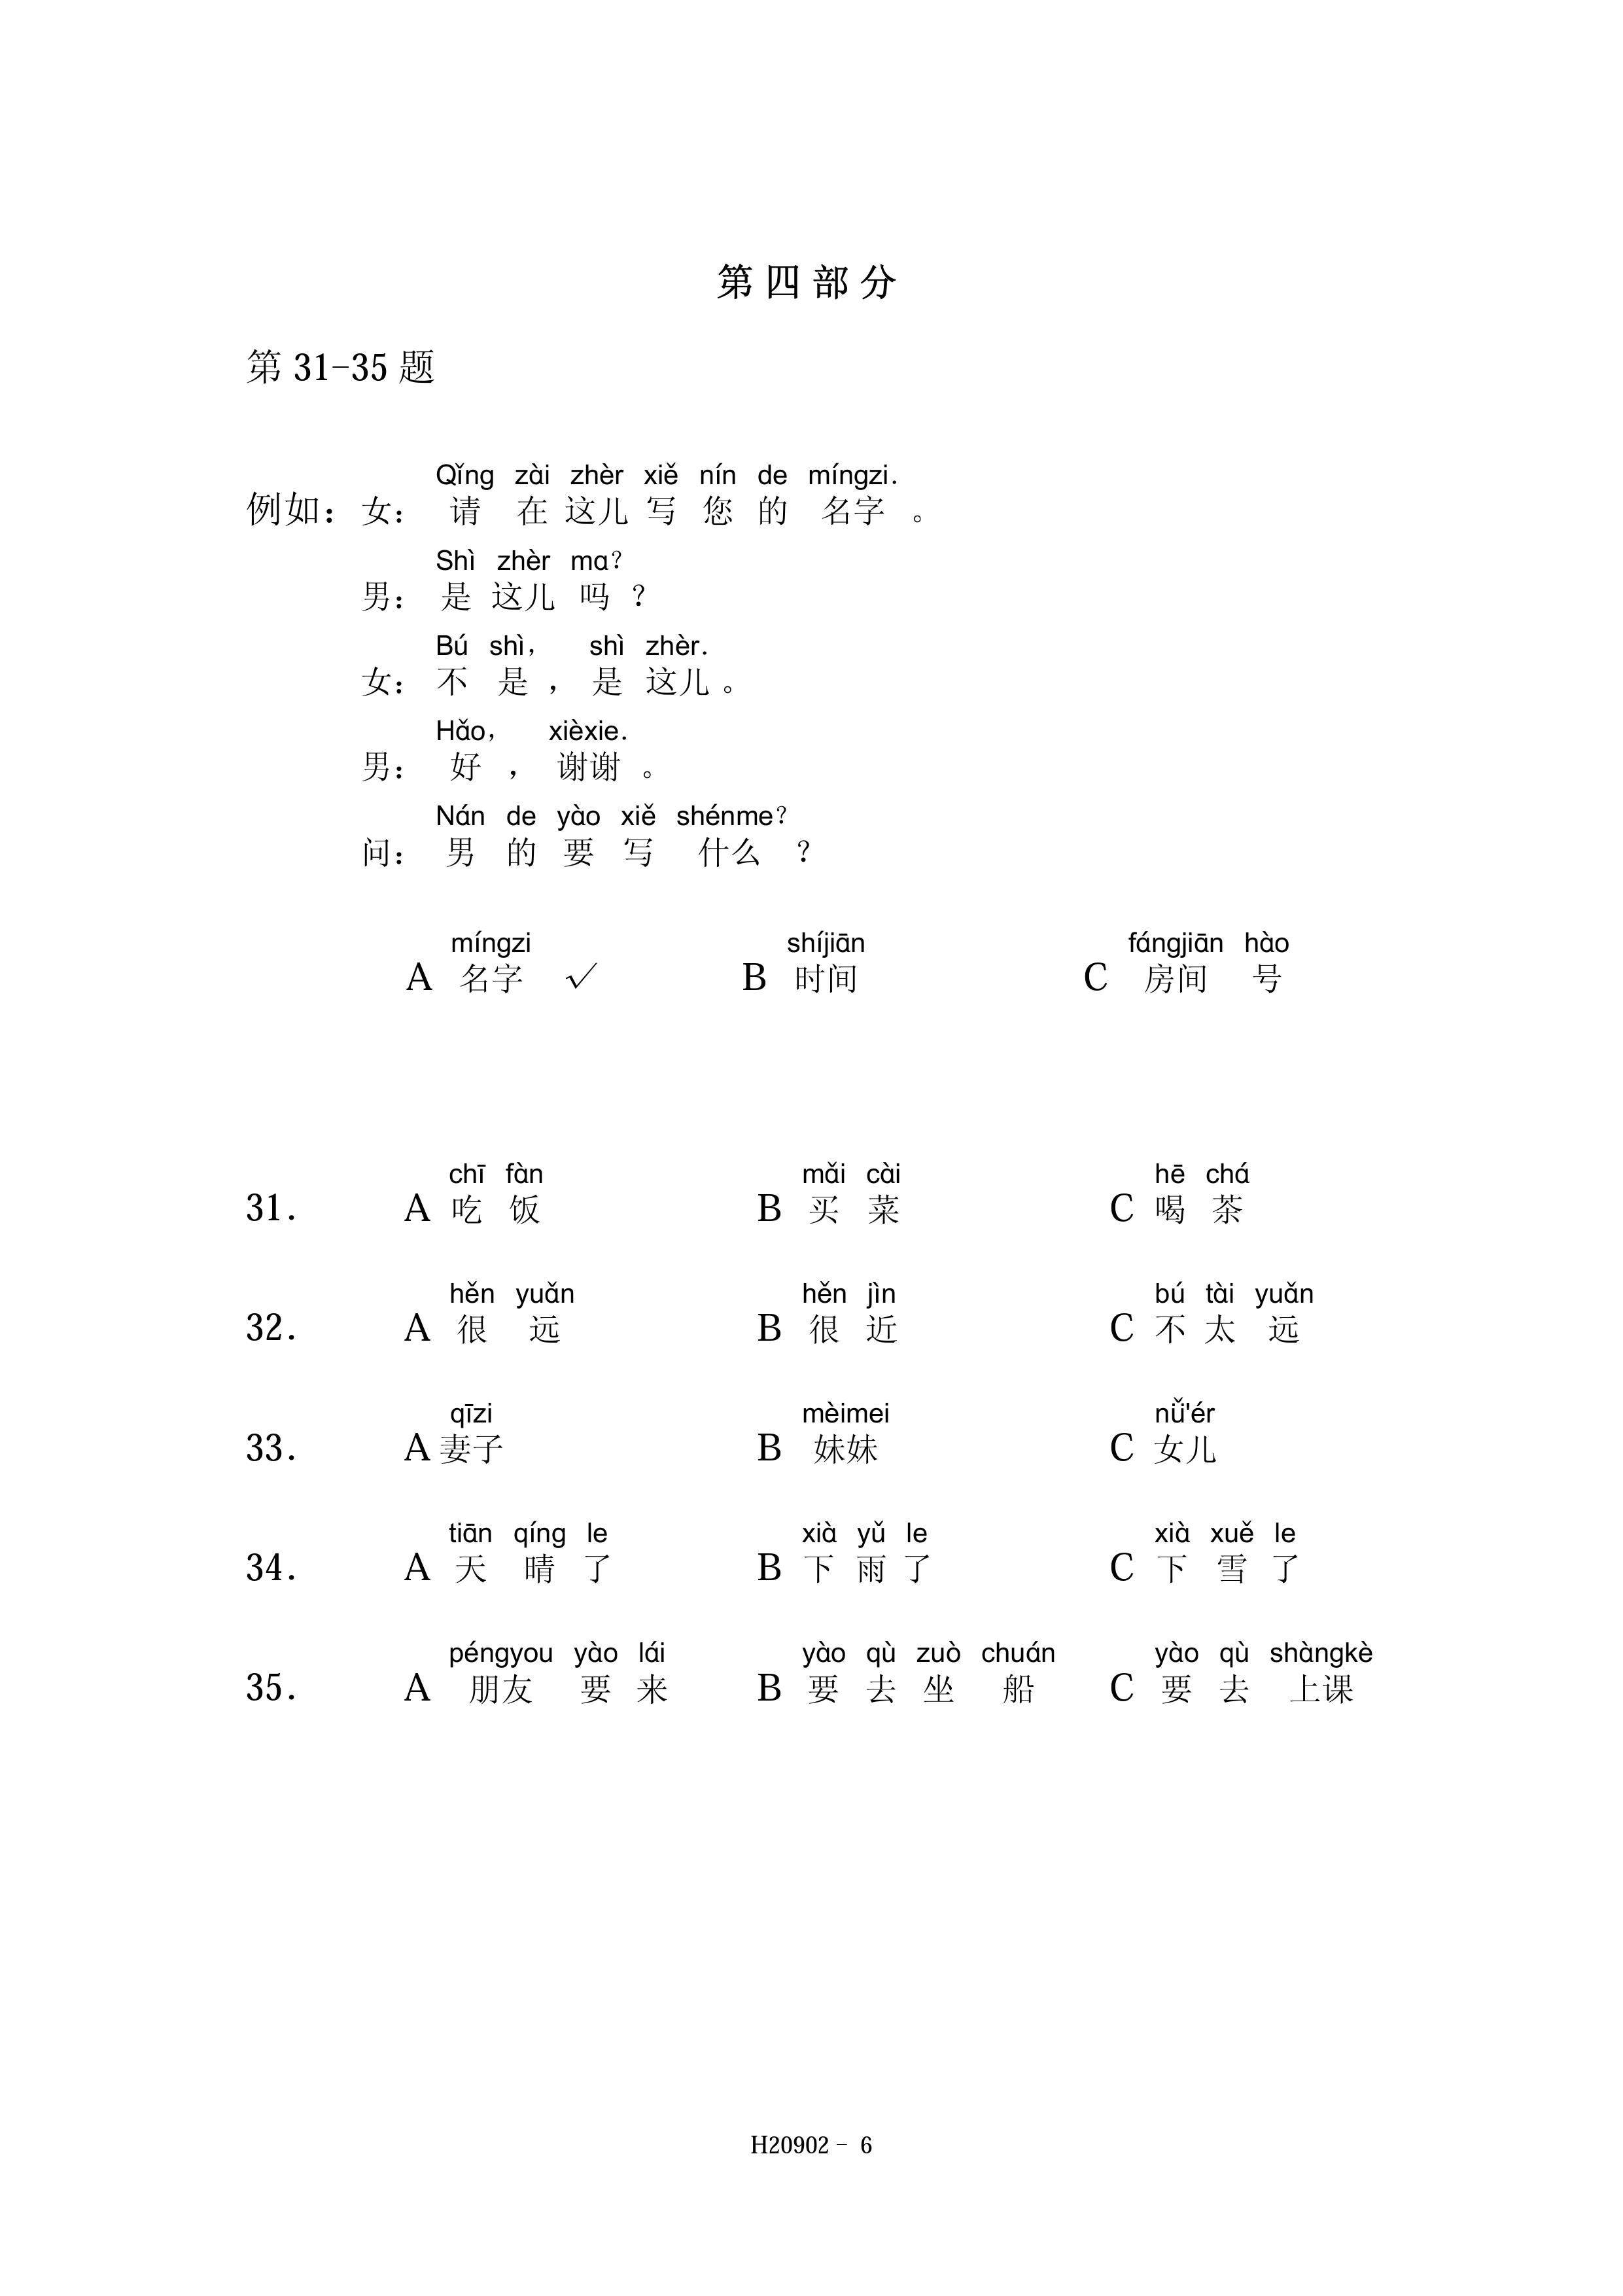 新汉语水平考试HSK（二级）试卷